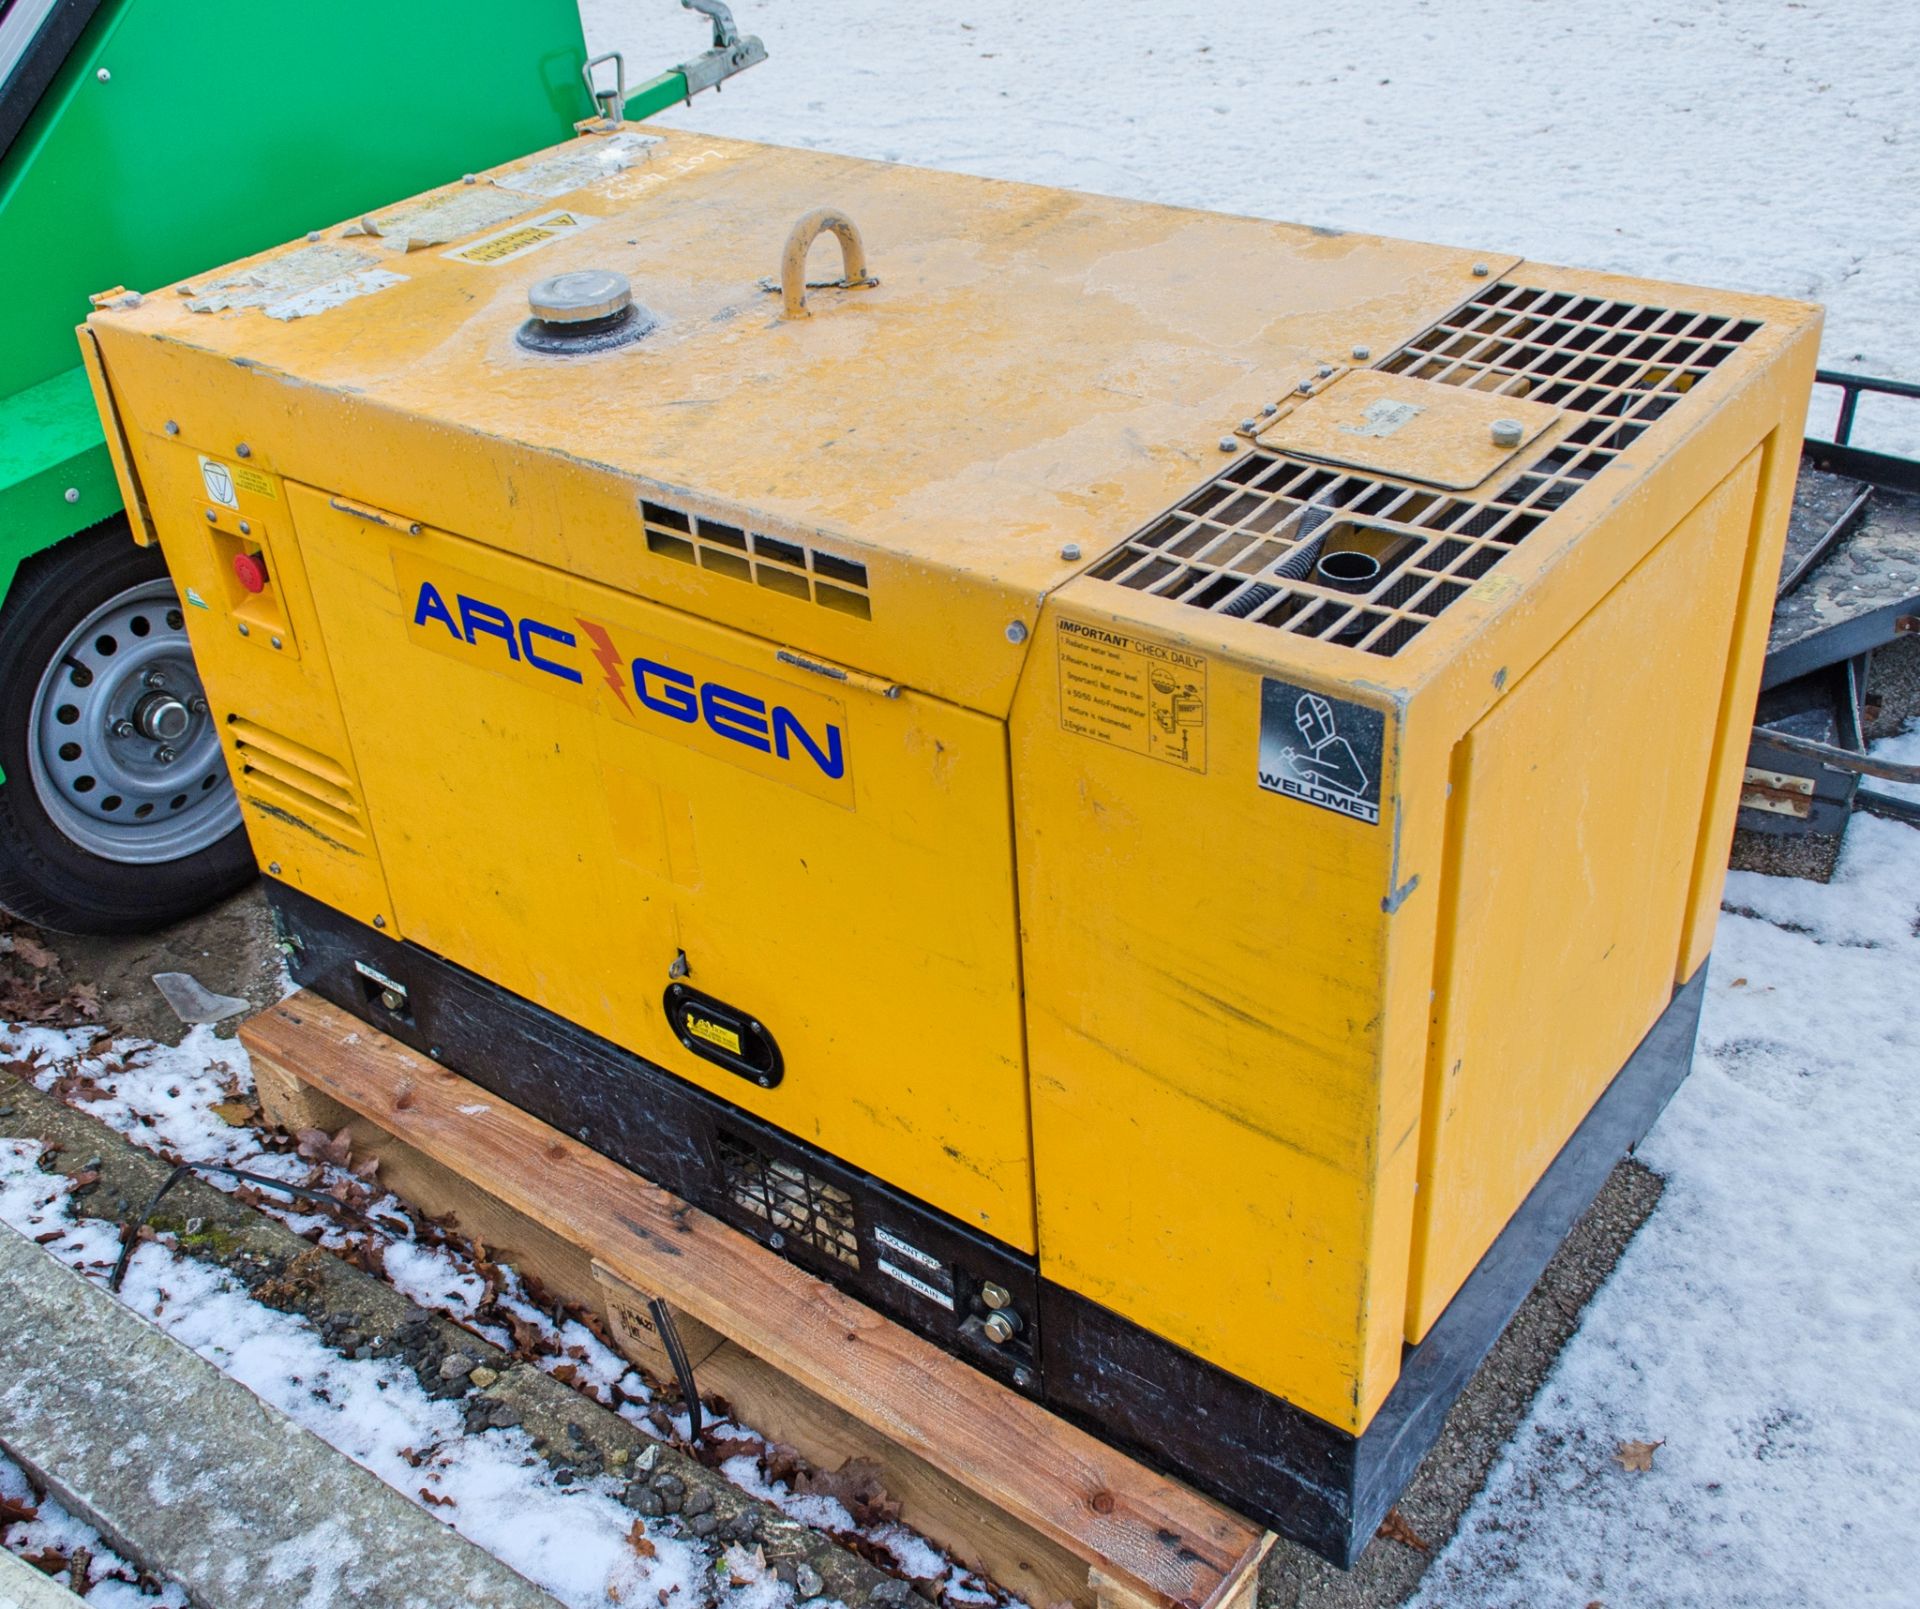 Arcgen Weldmaker 330 diesel driven welder/generator Recorded hours: 1696 WELD288 - Image 2 of 4